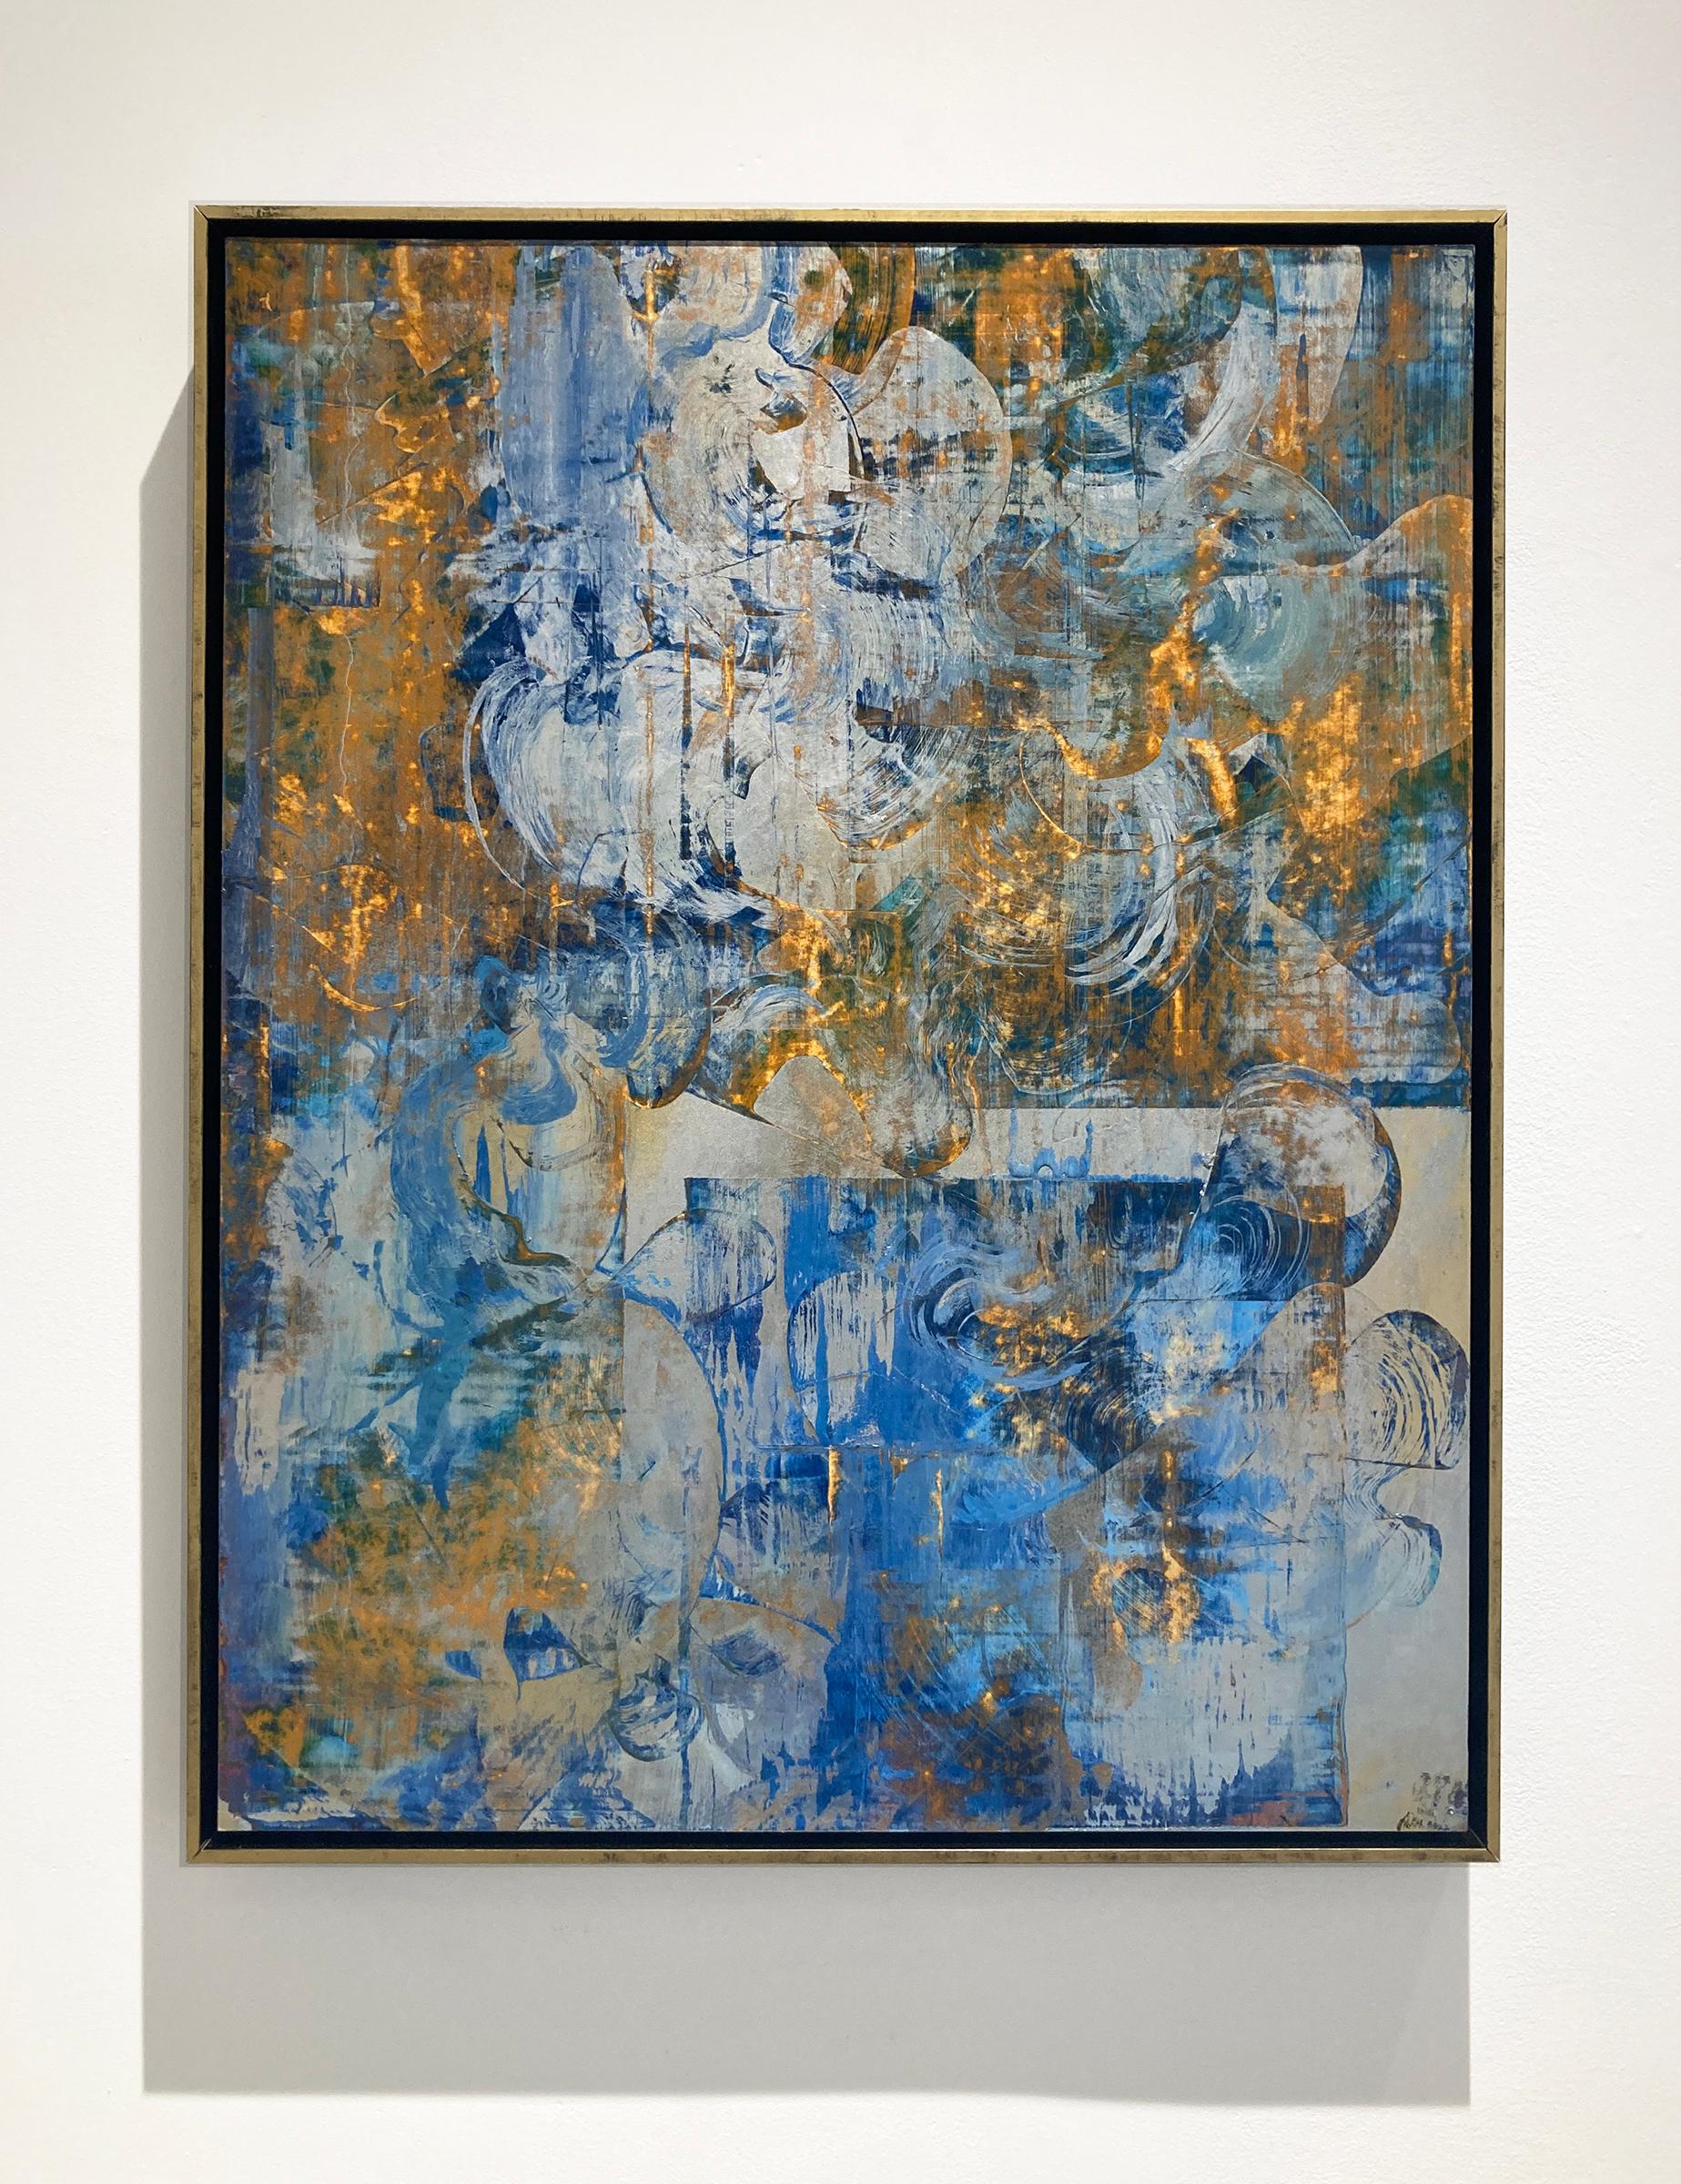 Right Now Is: Blaues und goldenes abstraktes Gemälde im Stil von Gerhard Richter – Art von Bruce Murphy